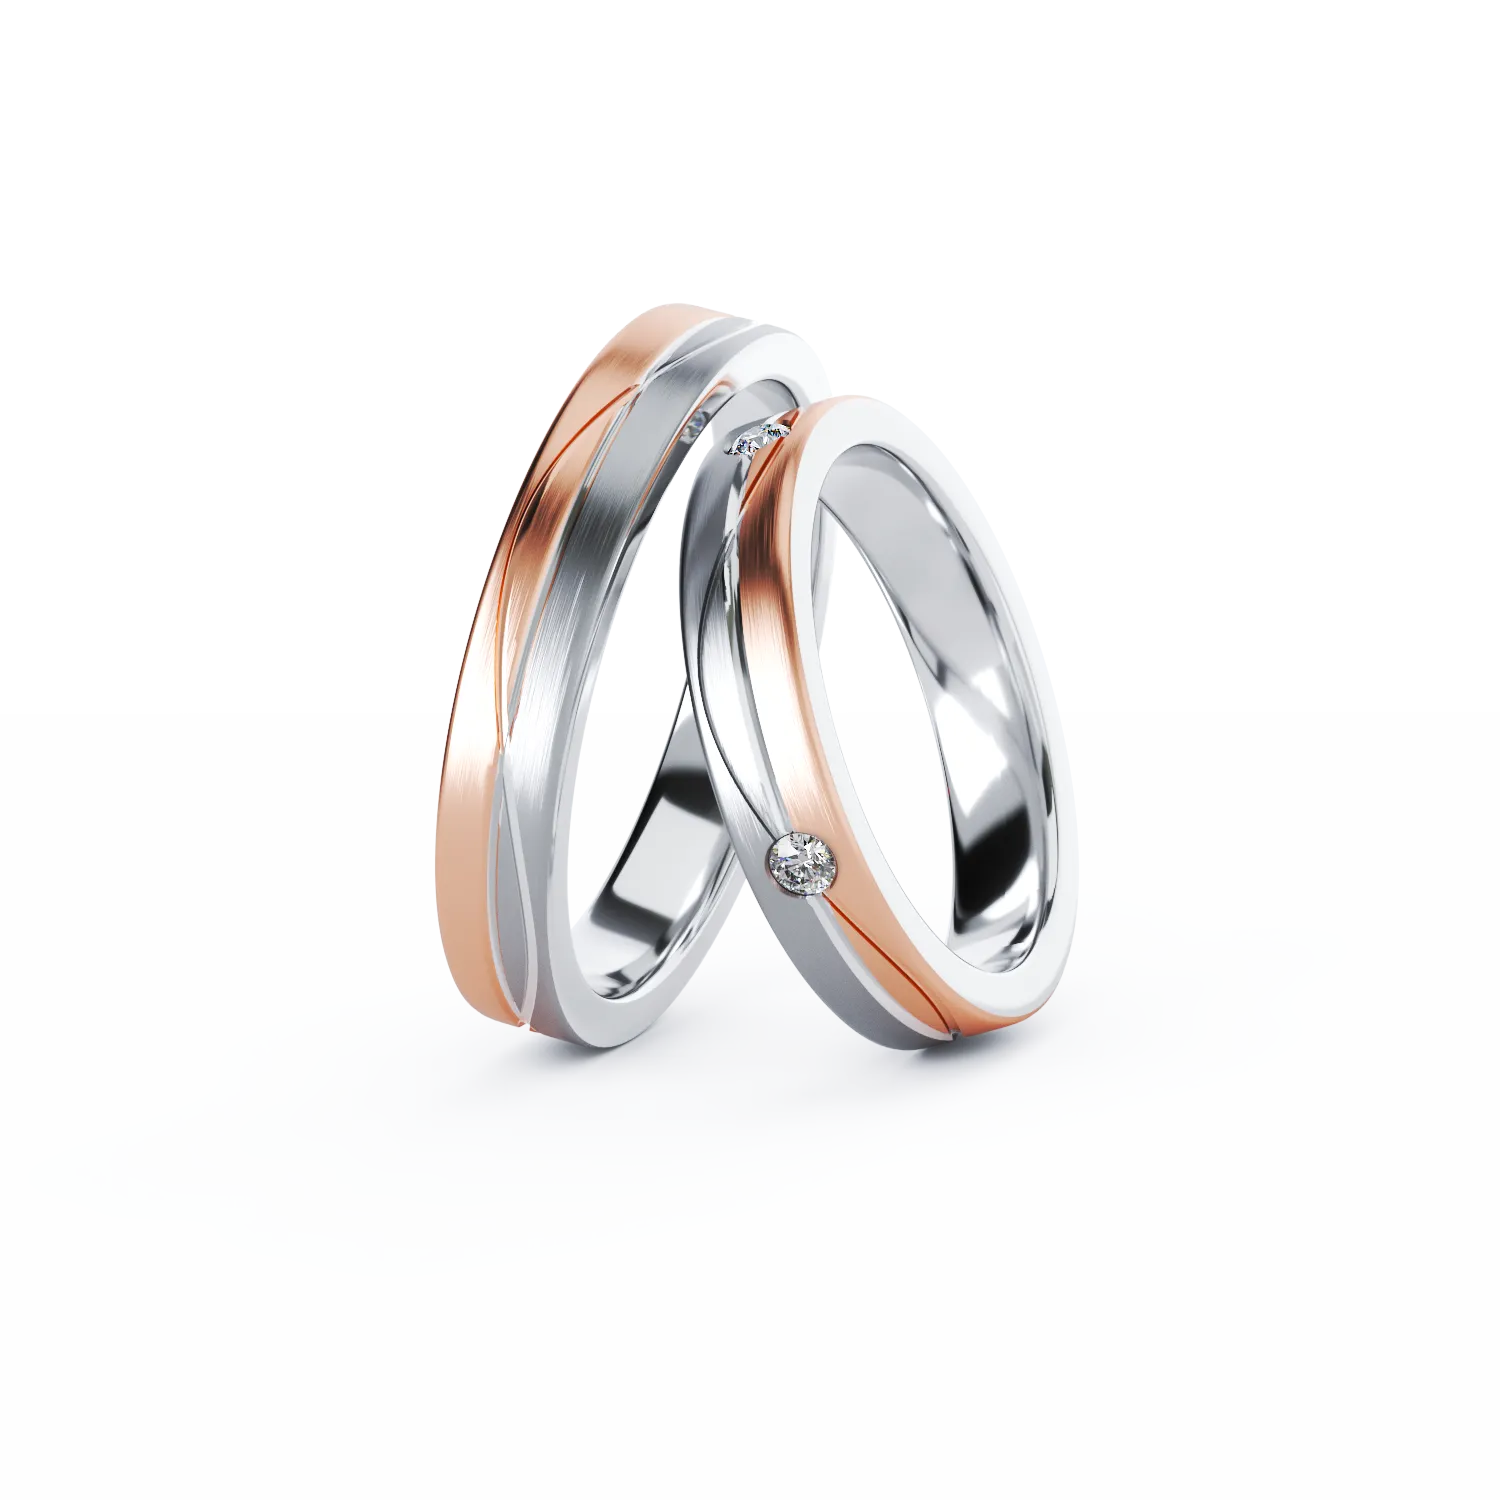 CYRA gold wedding rings